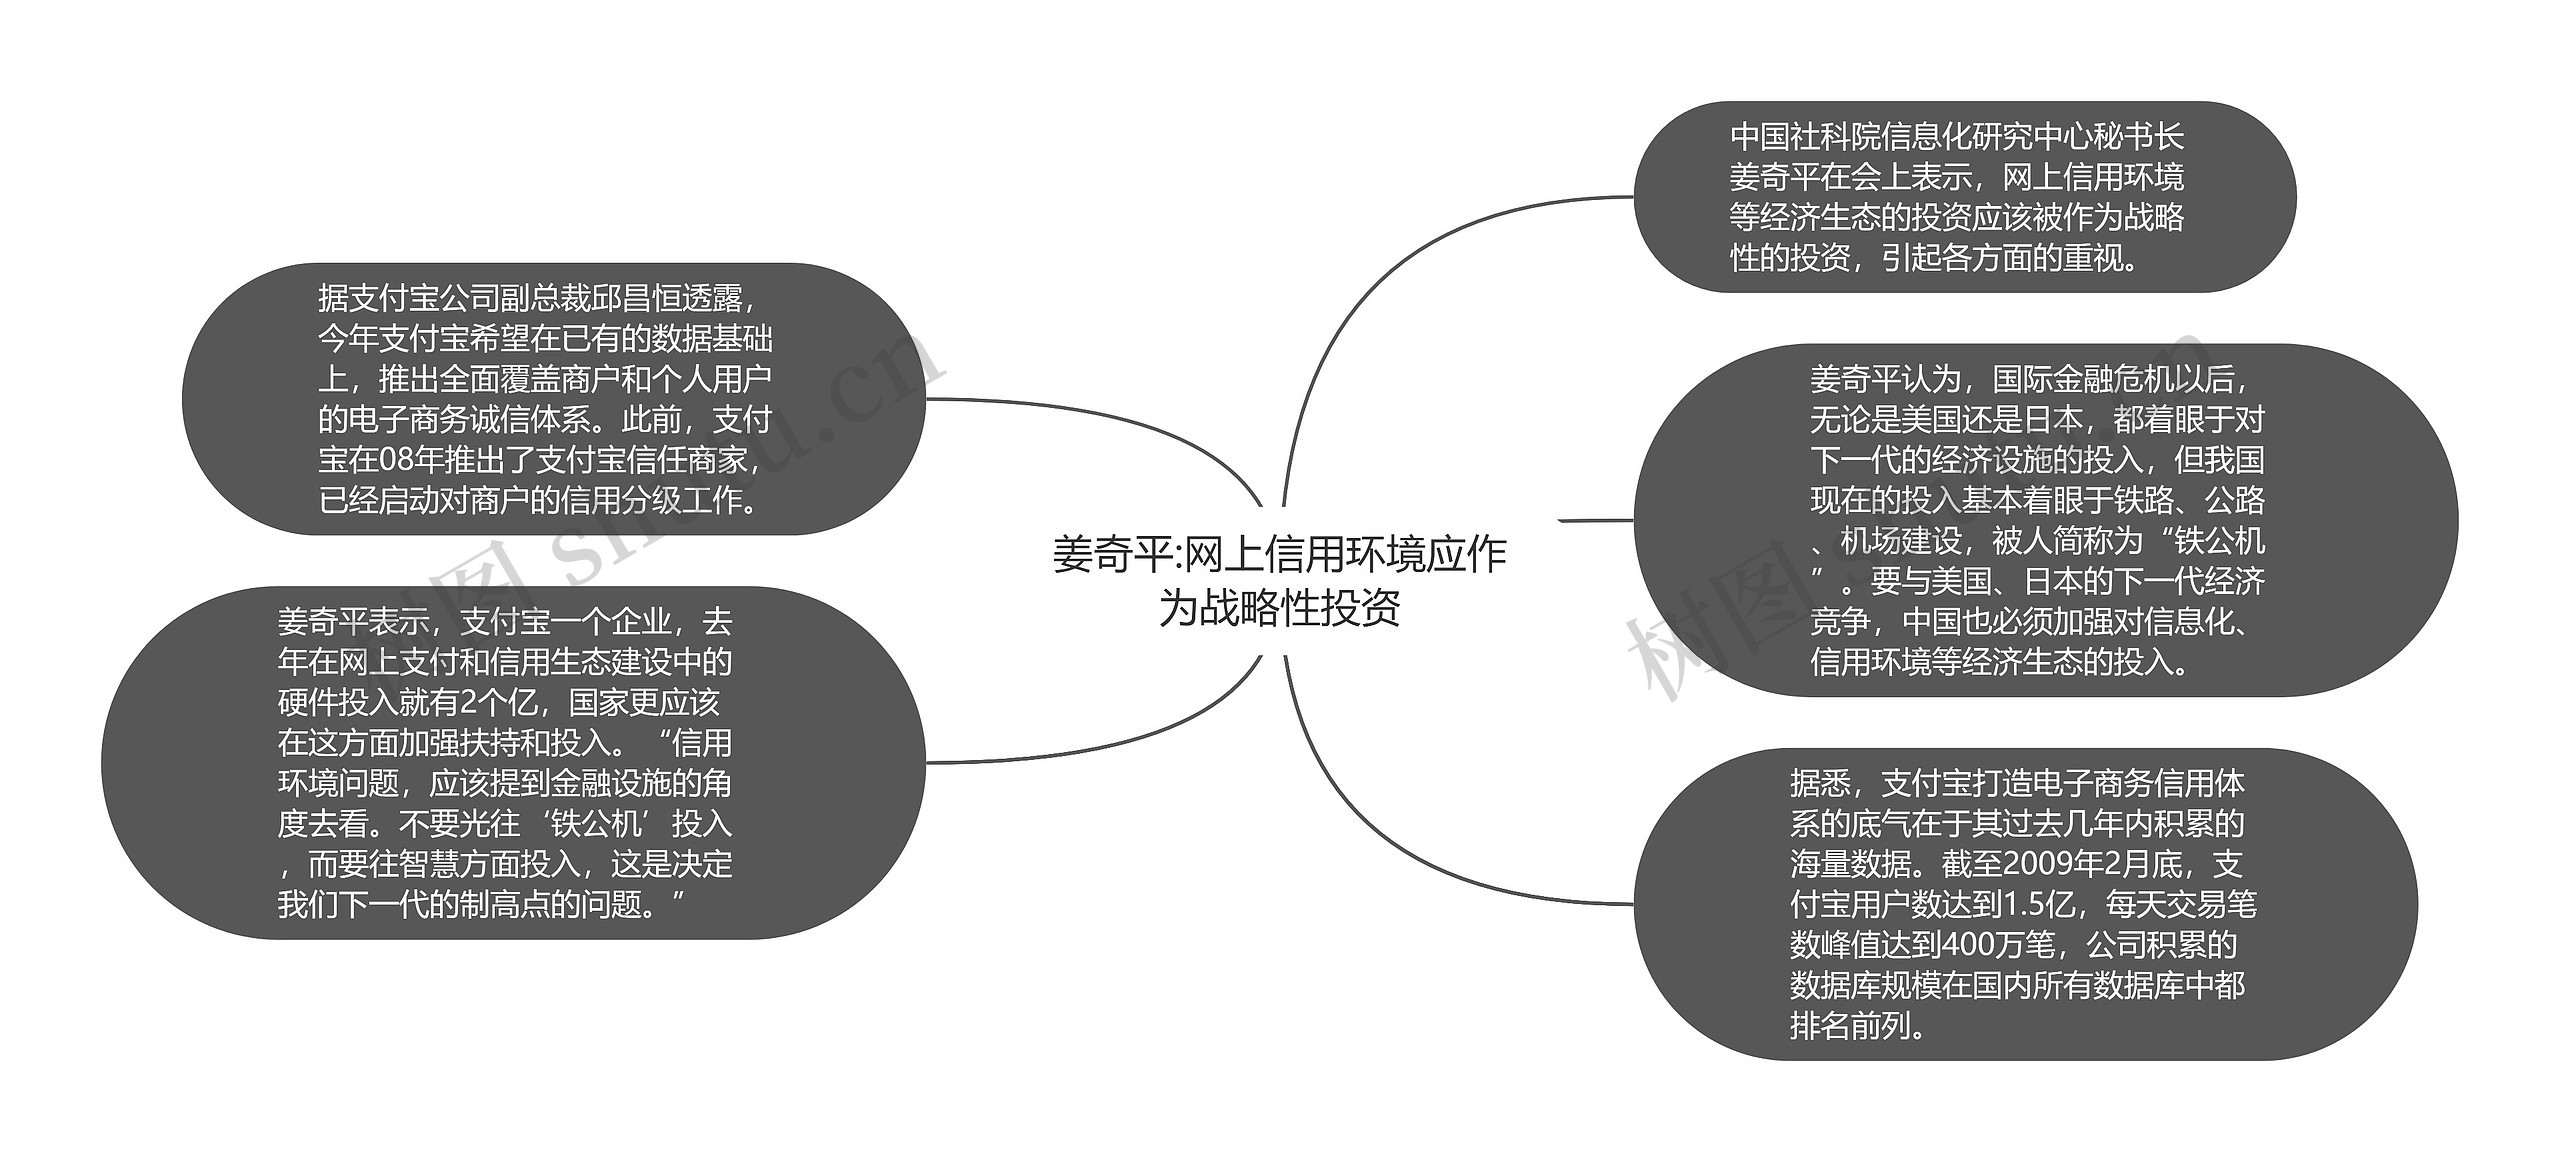 姜奇平:网上信用环境应作为战略性投资